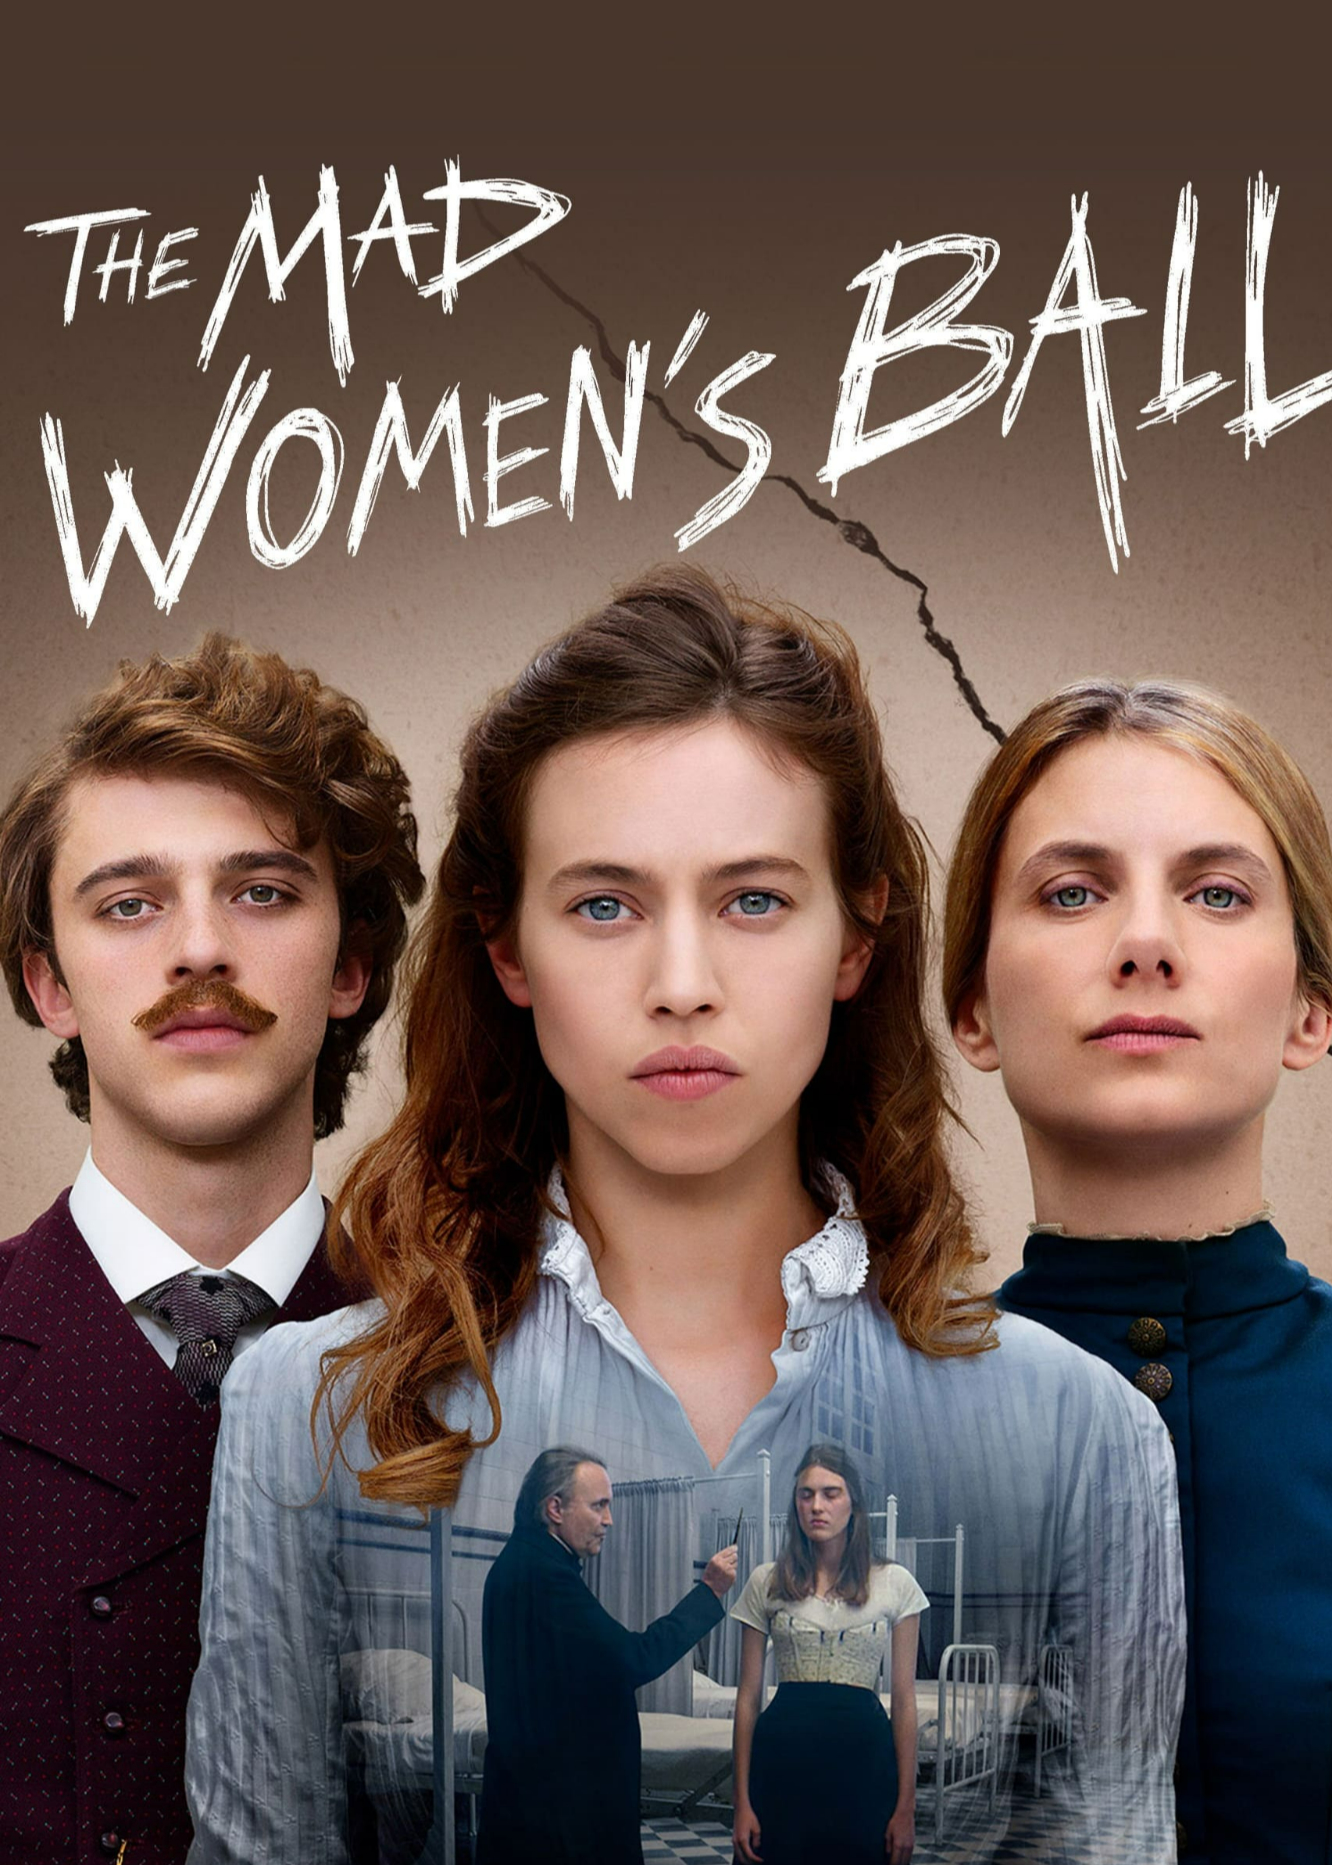 The Mad Women's Ball - The Mad Women's Ball